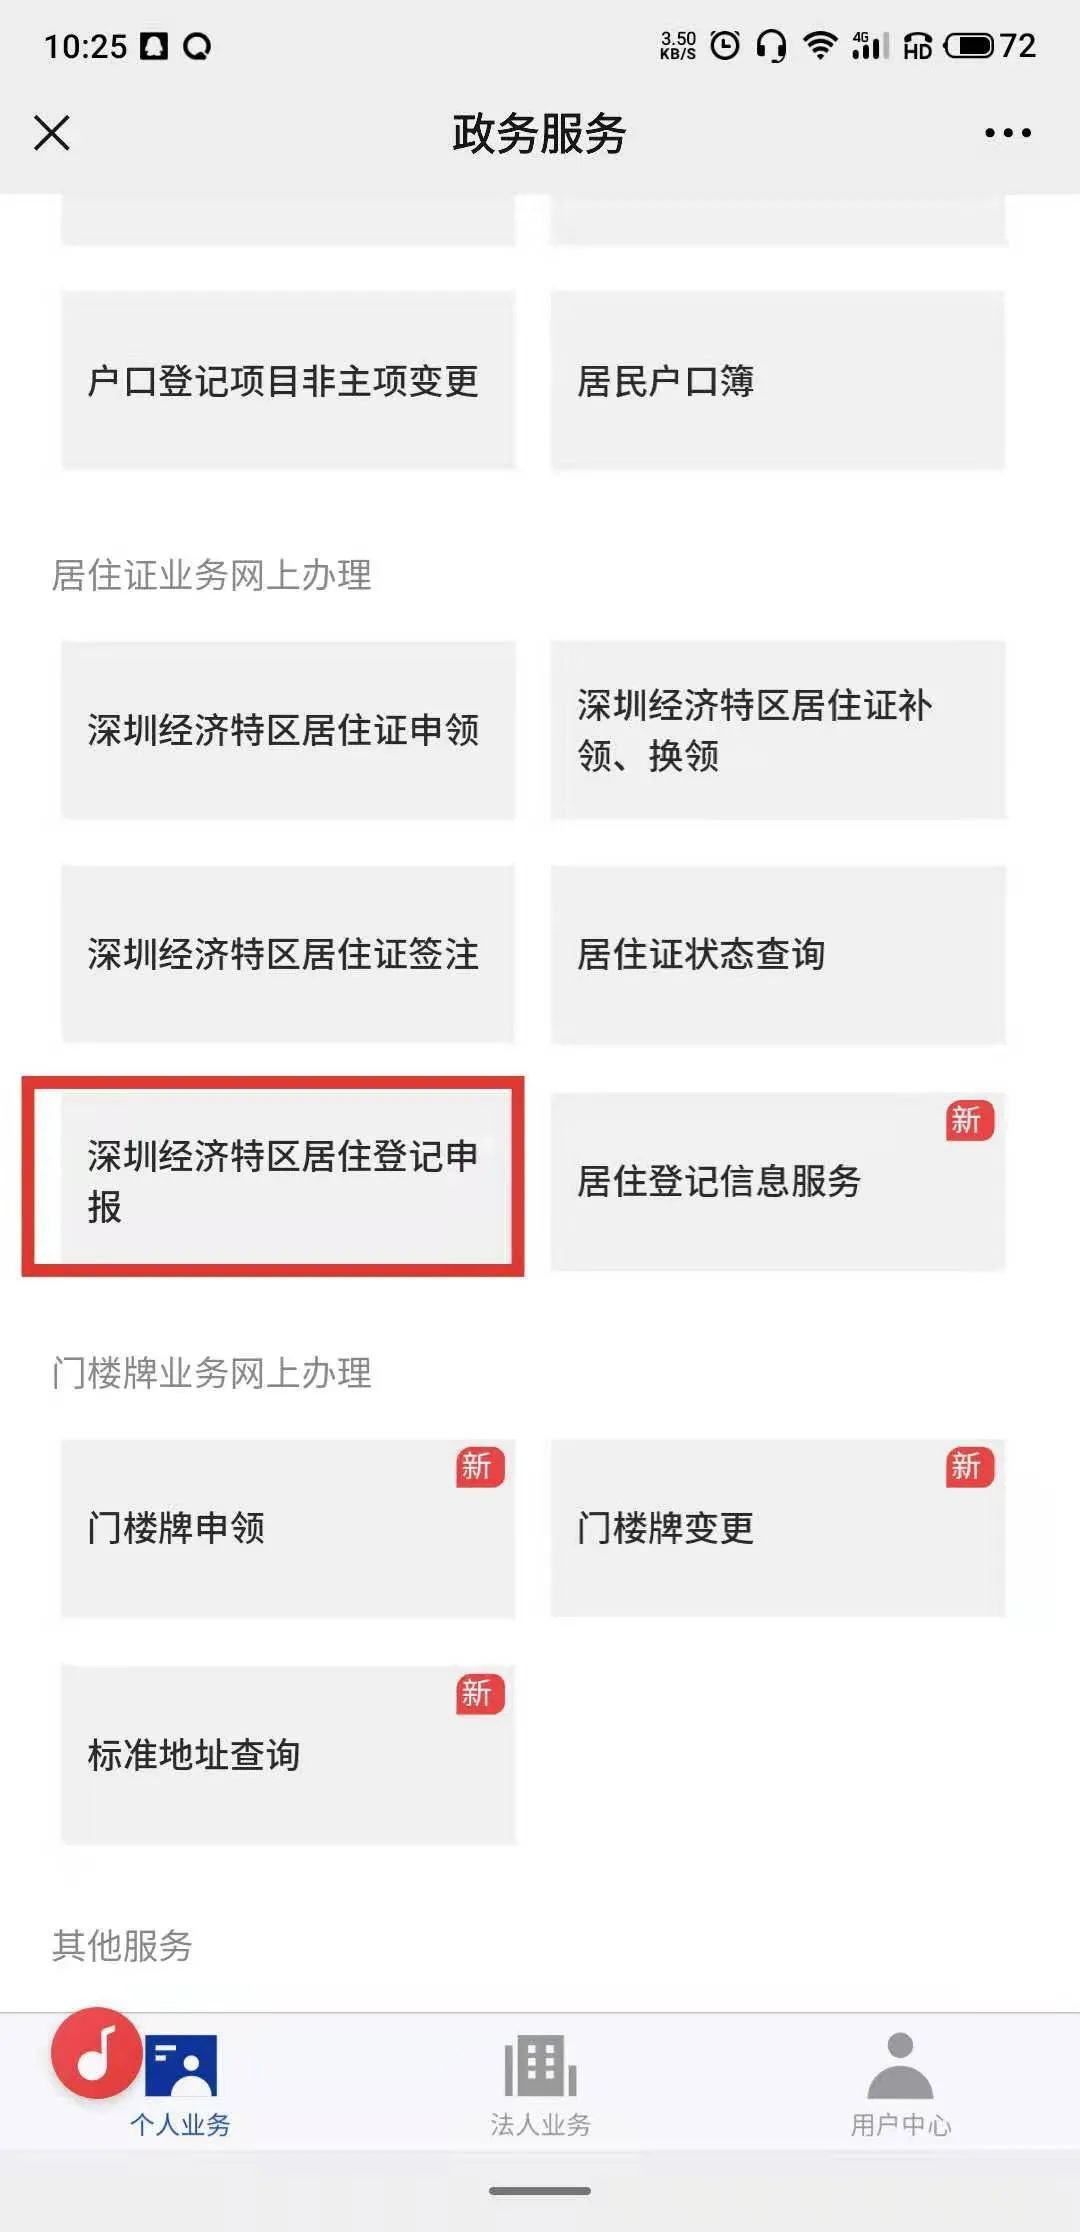 深圳居住信息登记网上办理入口 详细流程